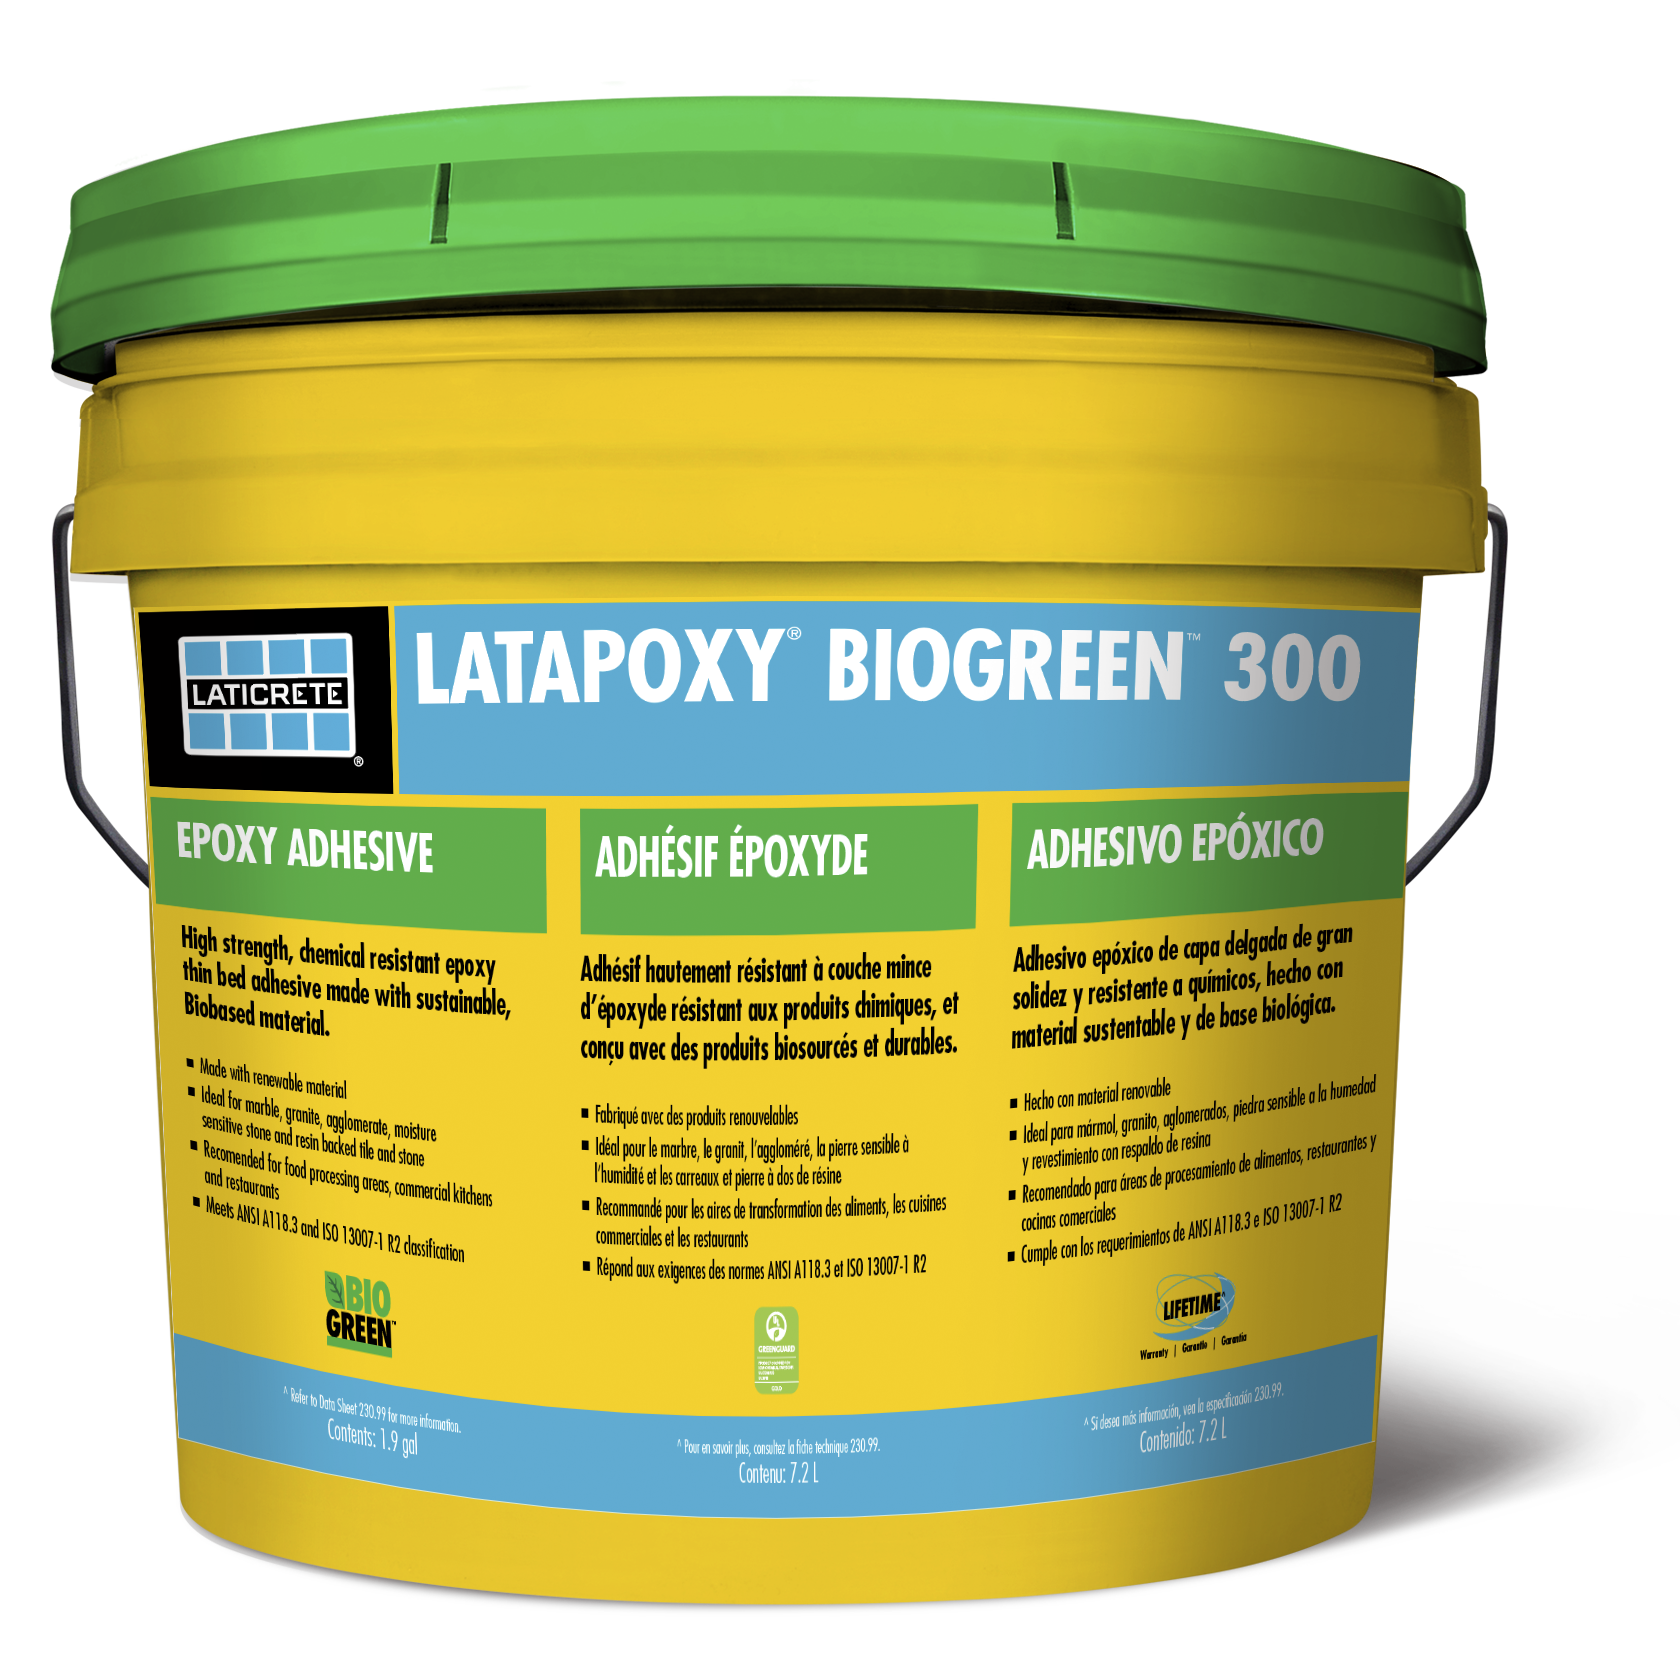 LATAPOXY® BIOGREEN™ 300 Adhesive